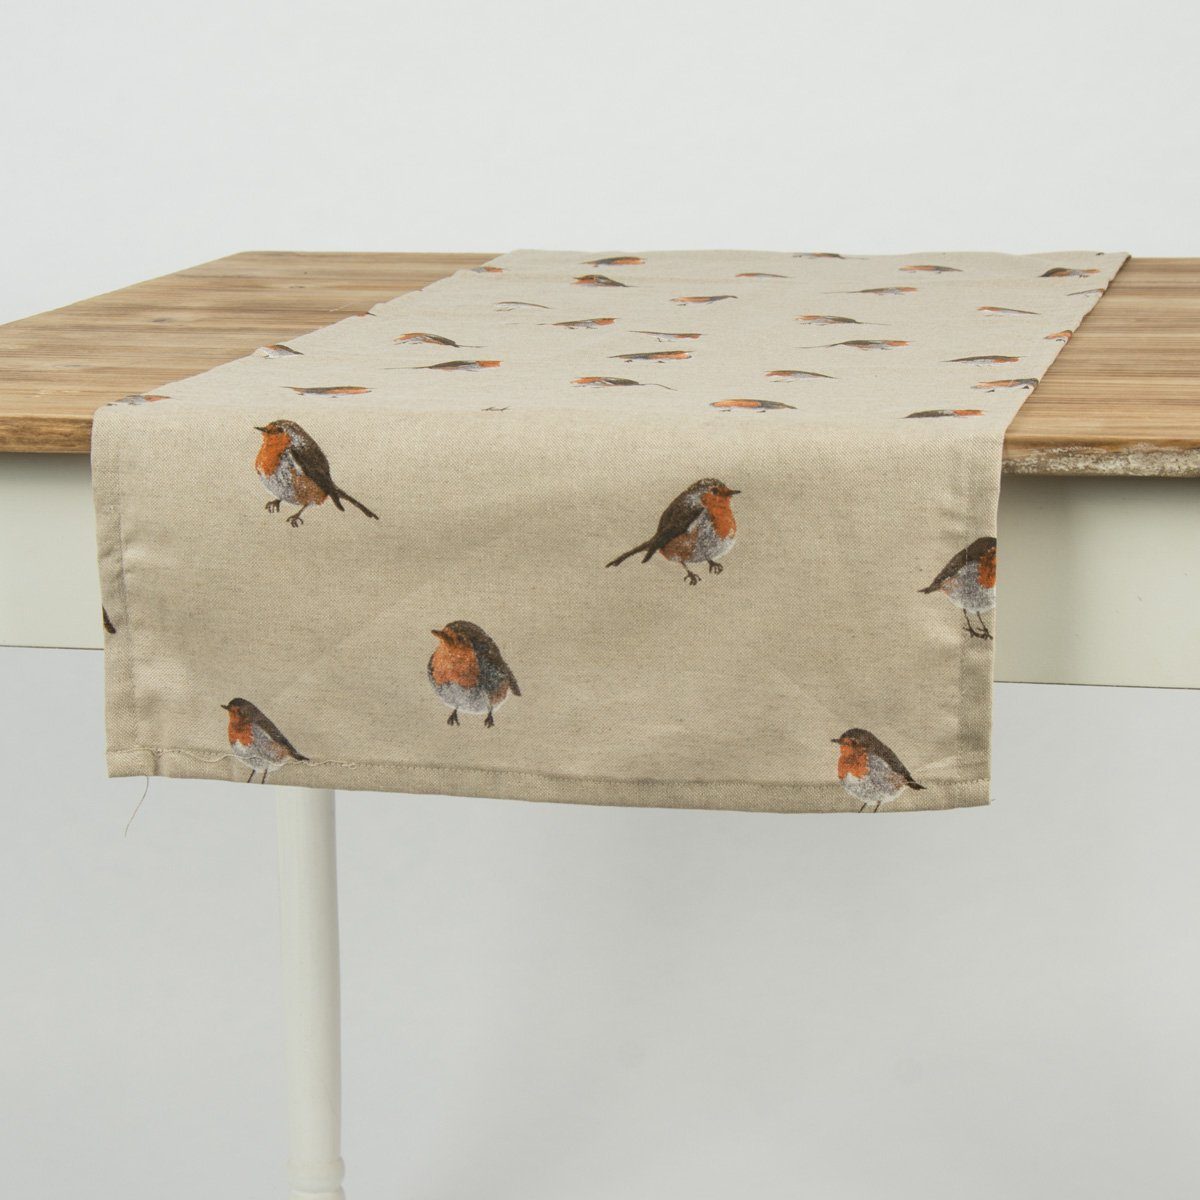 SCHÖNER LEBEN. Tischläufer Schöner Leben Vogel Tischläufer Rotkehlchen 40x160cm, braun handmade natur